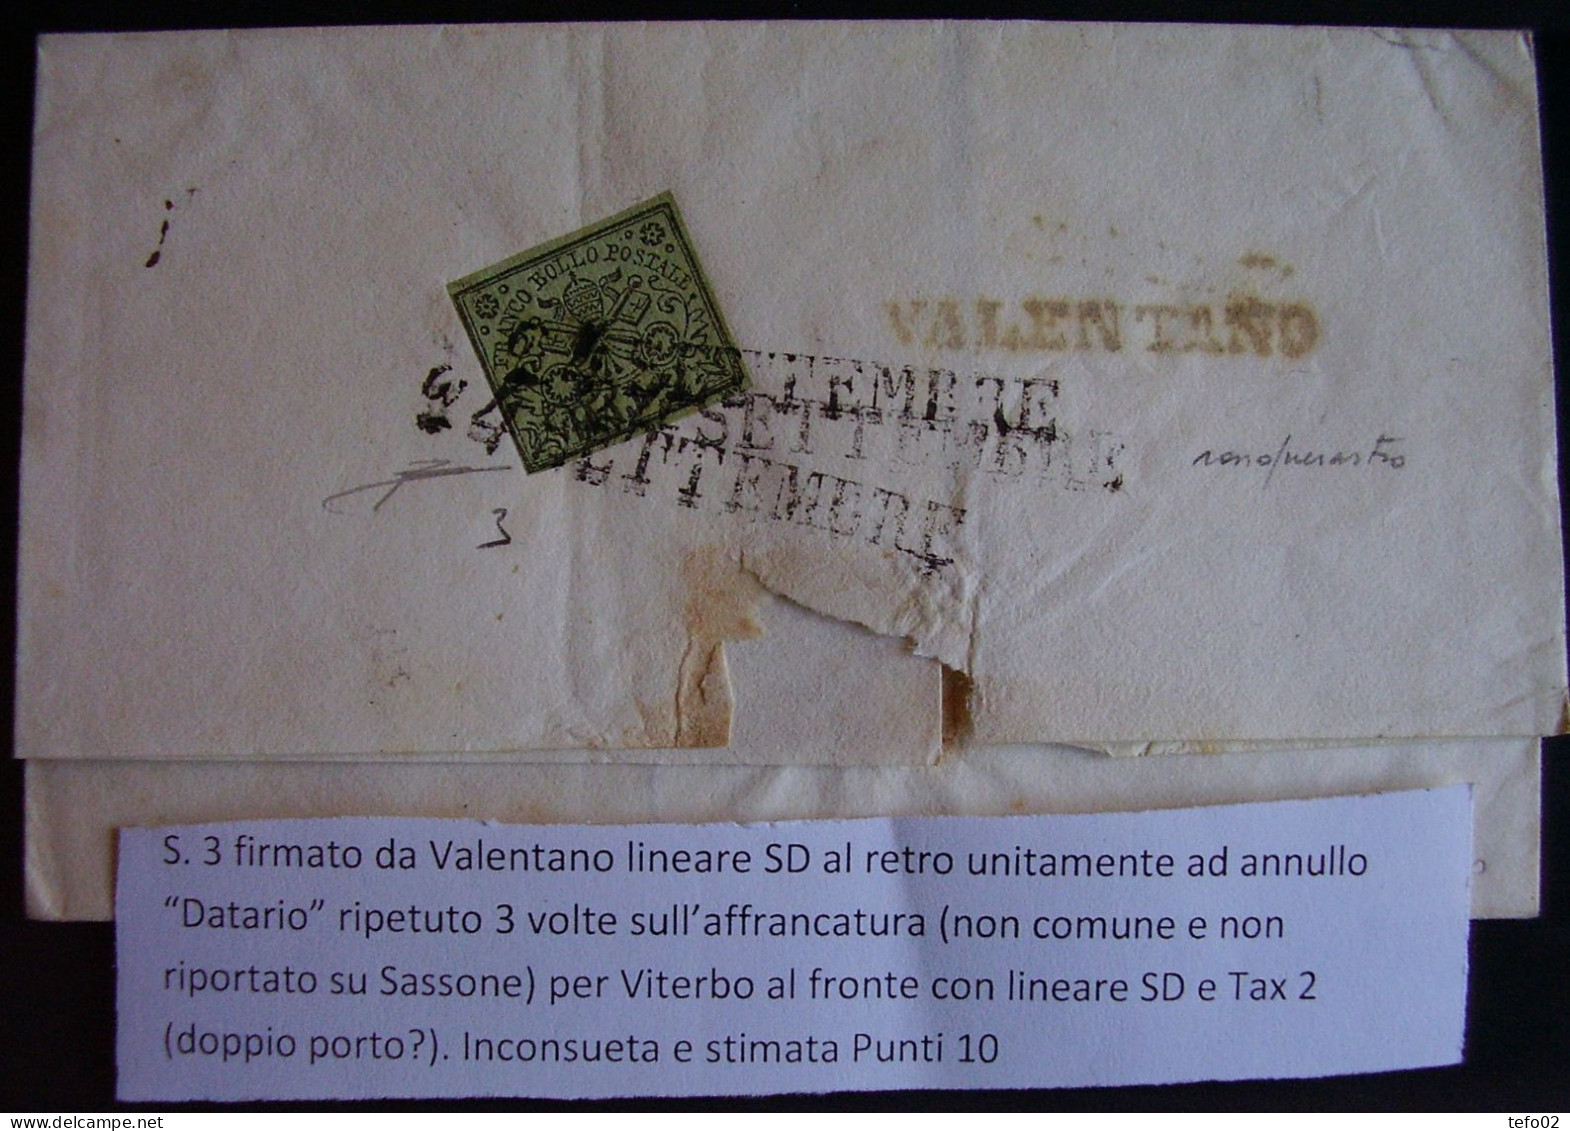 Pontificio. Storia postale. La Direzione postale di Viterbo